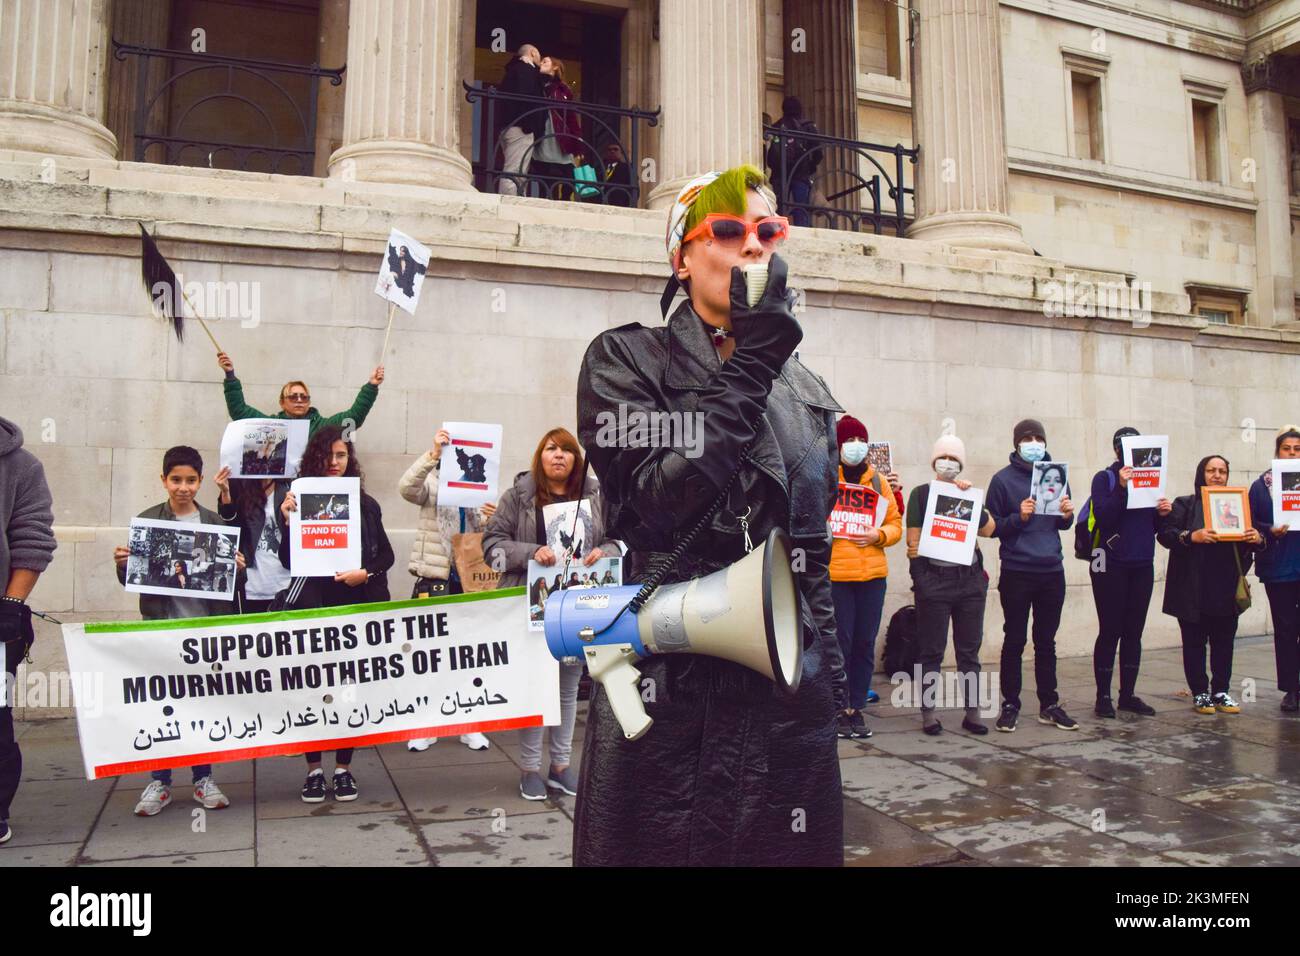 Londres, Reino Unido. 27th de Sep de 2022. Un manifestante canta lemas a través de un megáfono durante la manifestación en Trafalgar Square. Los manifestantes siguen reuniéndose en Londres en respuesta a la muerte de Mahsa Amini, quien murió bajo custodia policial en Irán tras ser detenido por no llevar una bufanda (hijab) 'adecuadamente' en público. Crédito: SOPA Images Limited/Alamy Live News Foto de stock